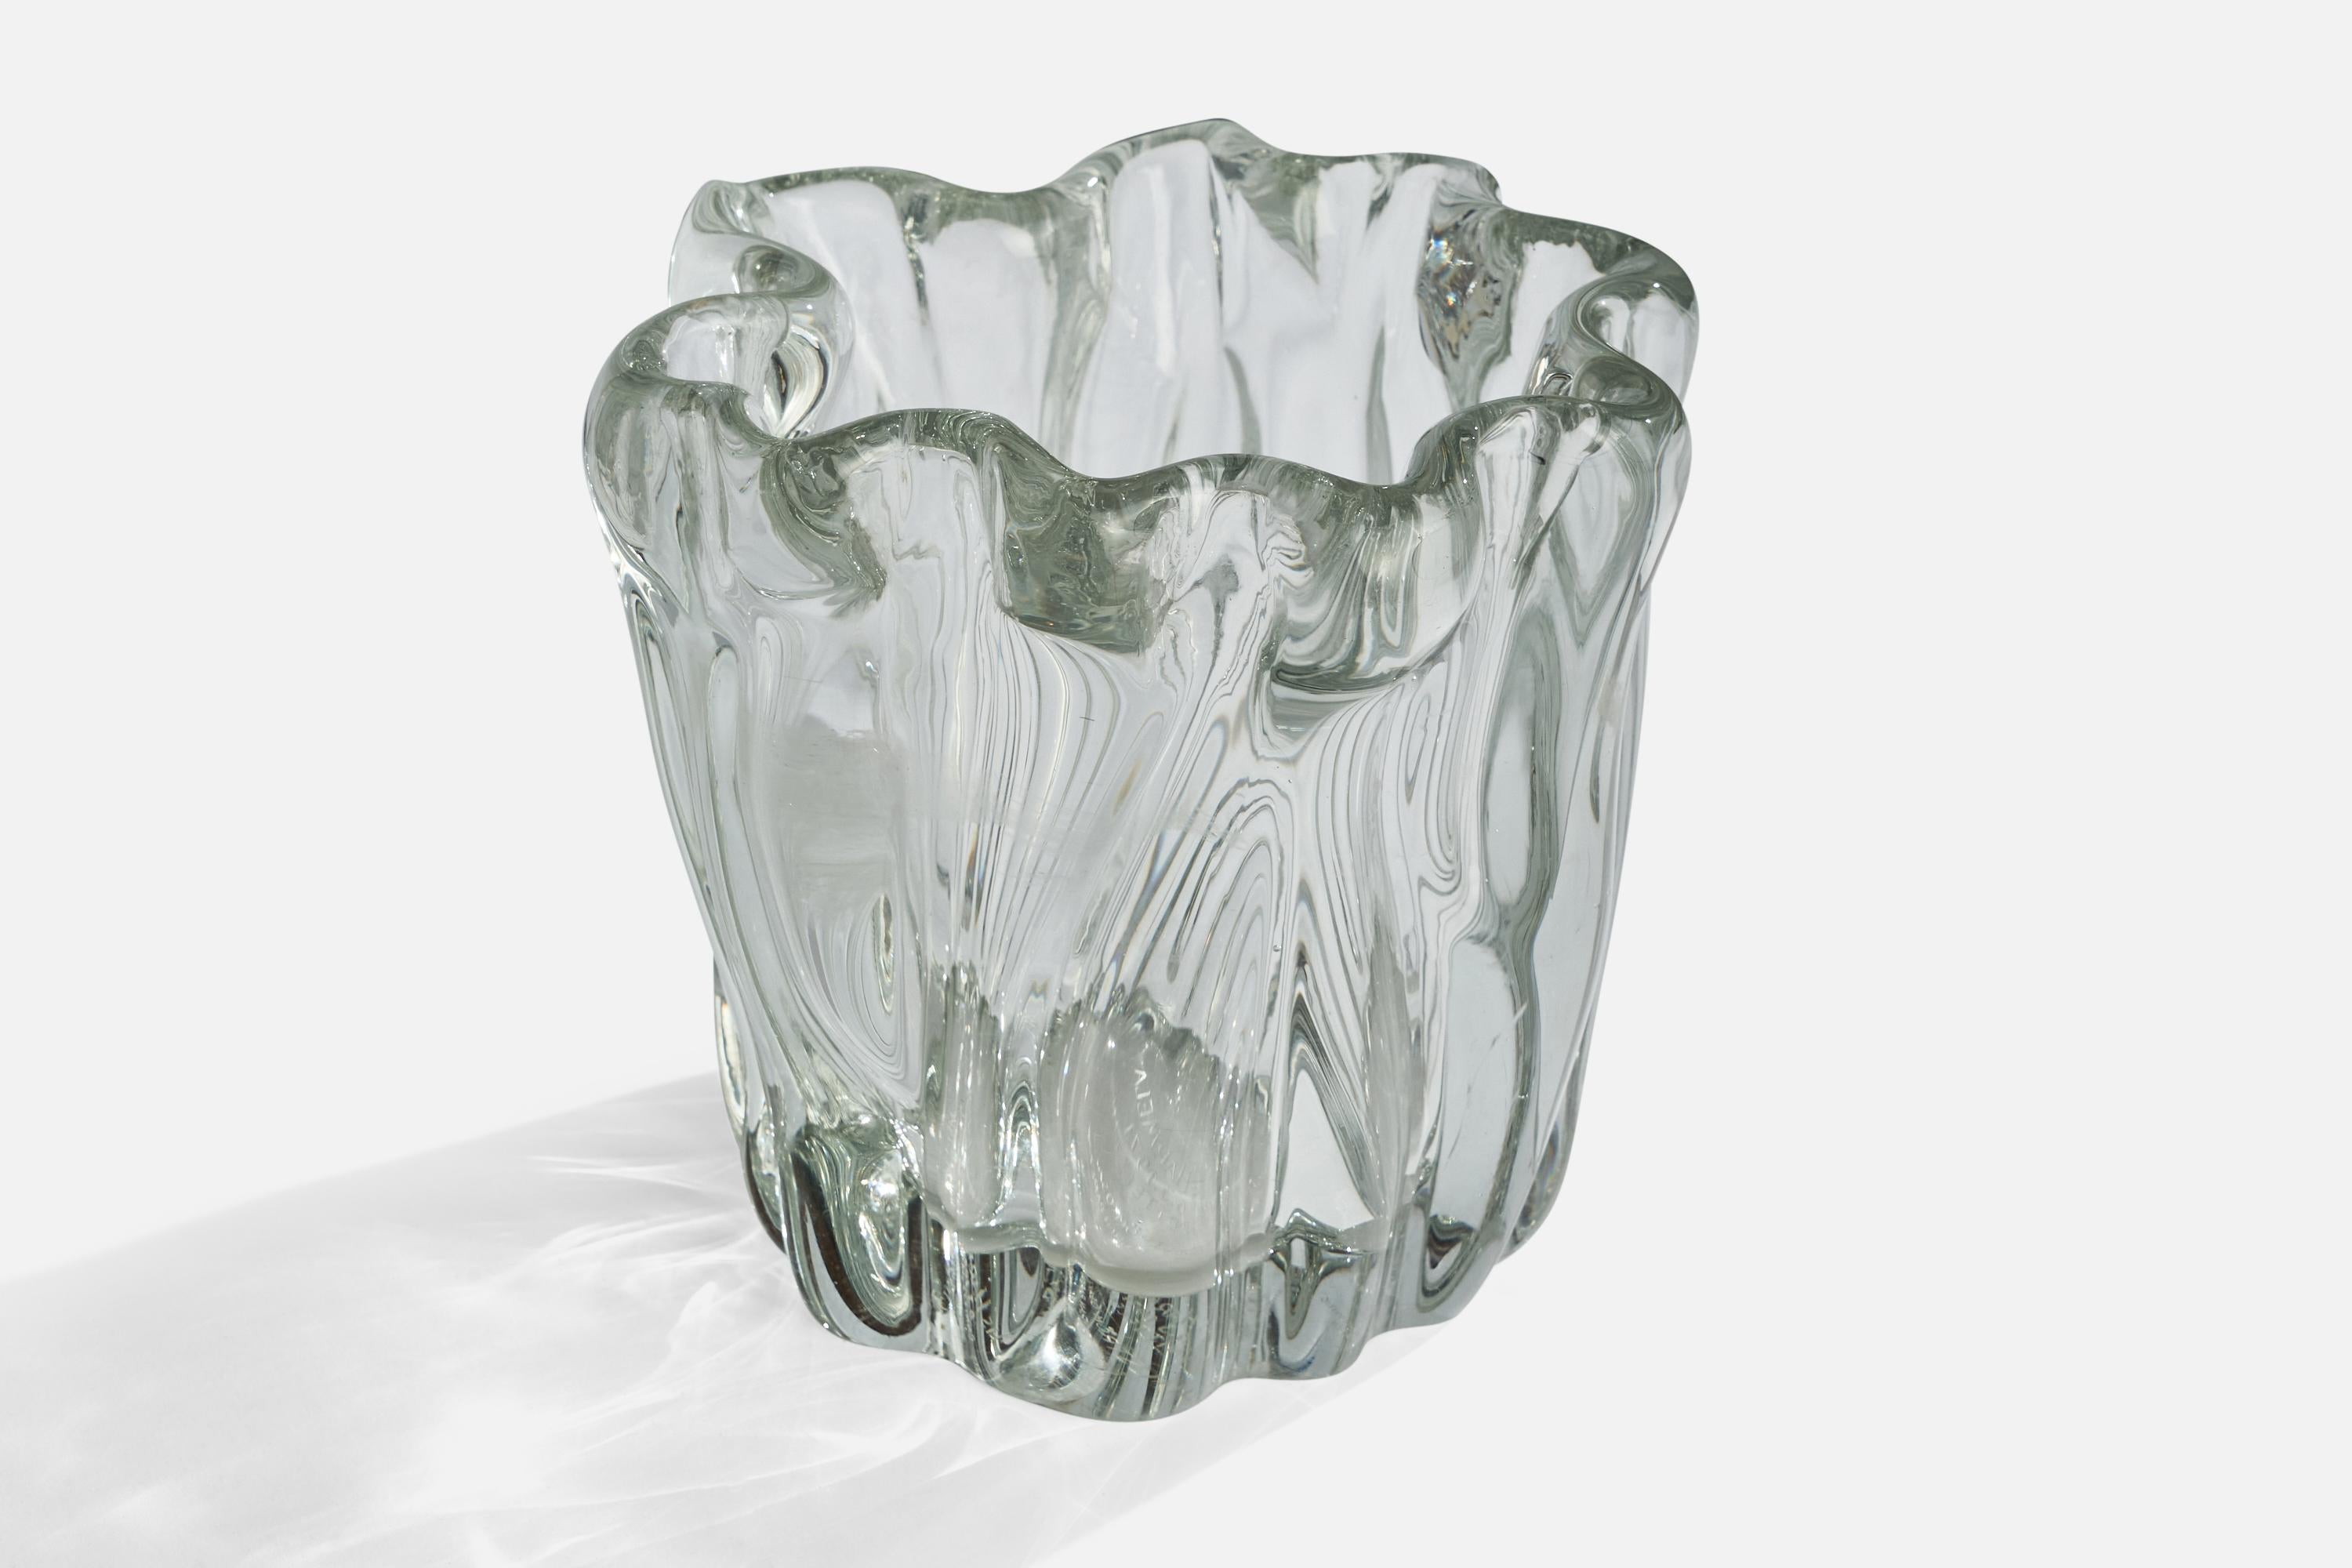 Finnish Tapio Wirkkala, Vase, Blown Glass, Finland, 1950s